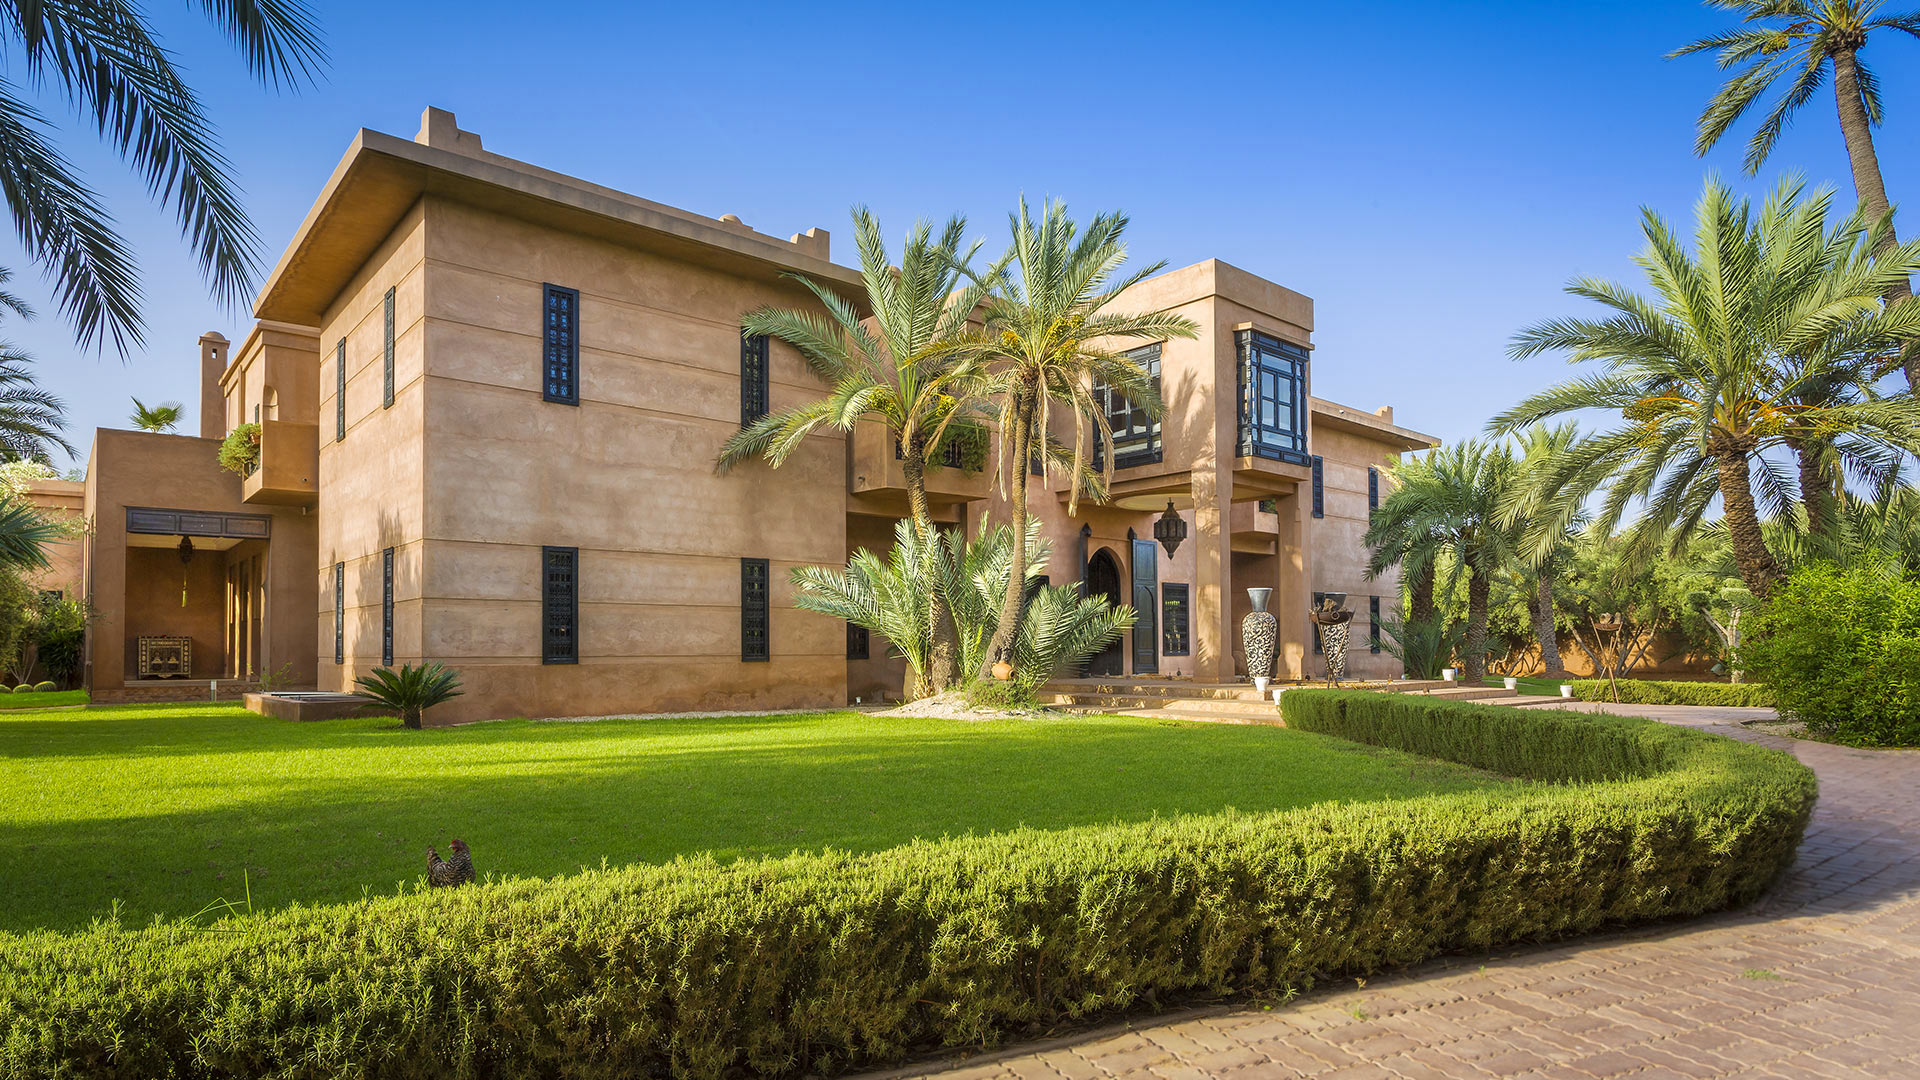 Villa Villa El Jenna, Rental in Marrakech